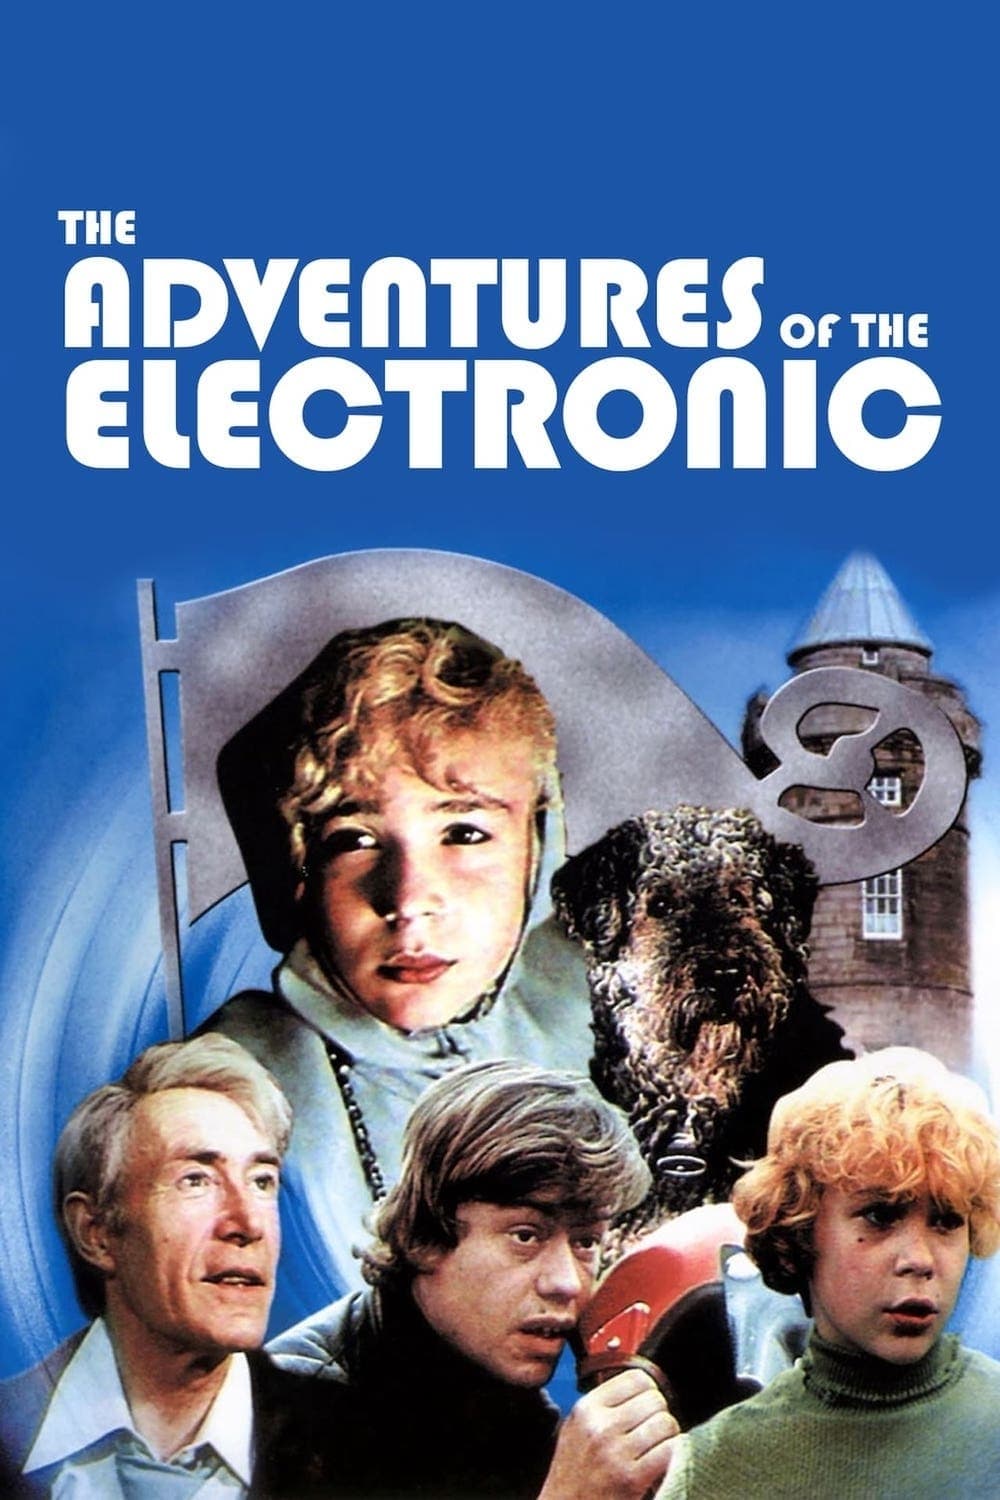 Приключения Электроника (1980)